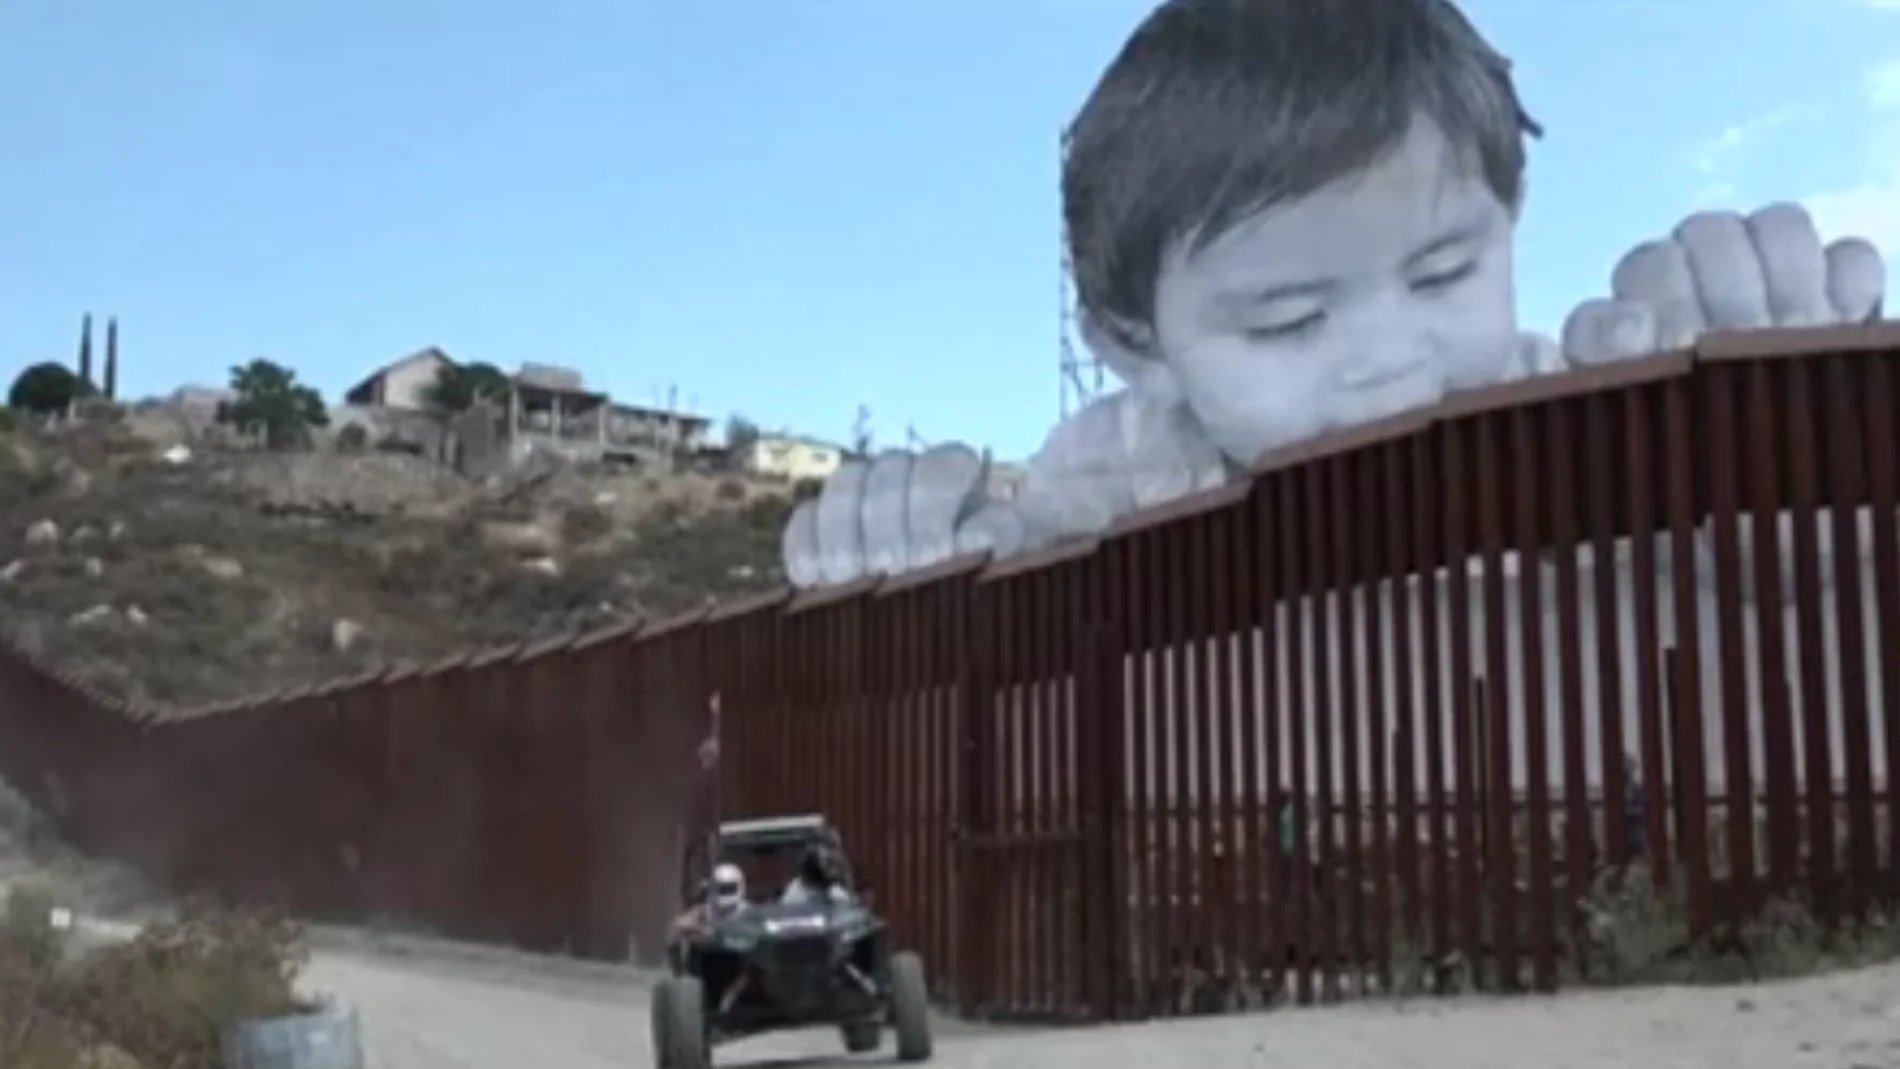 Reivindicativo mural de un niño de 21 metros de altura en la frontera entre México y EEUU